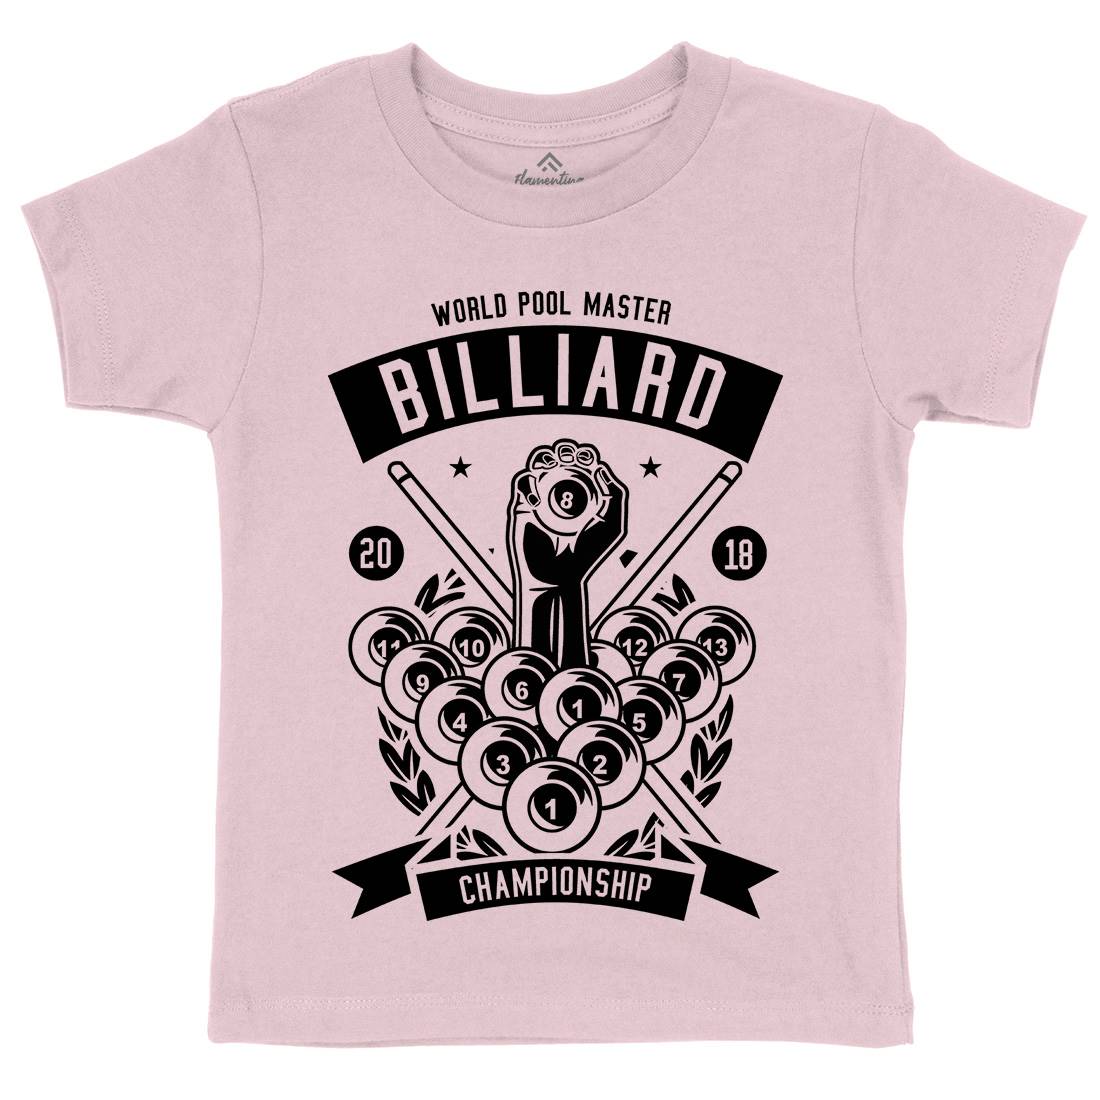 Billiard Championship Kids Organic Crew Neck T-Shirt Sport B499